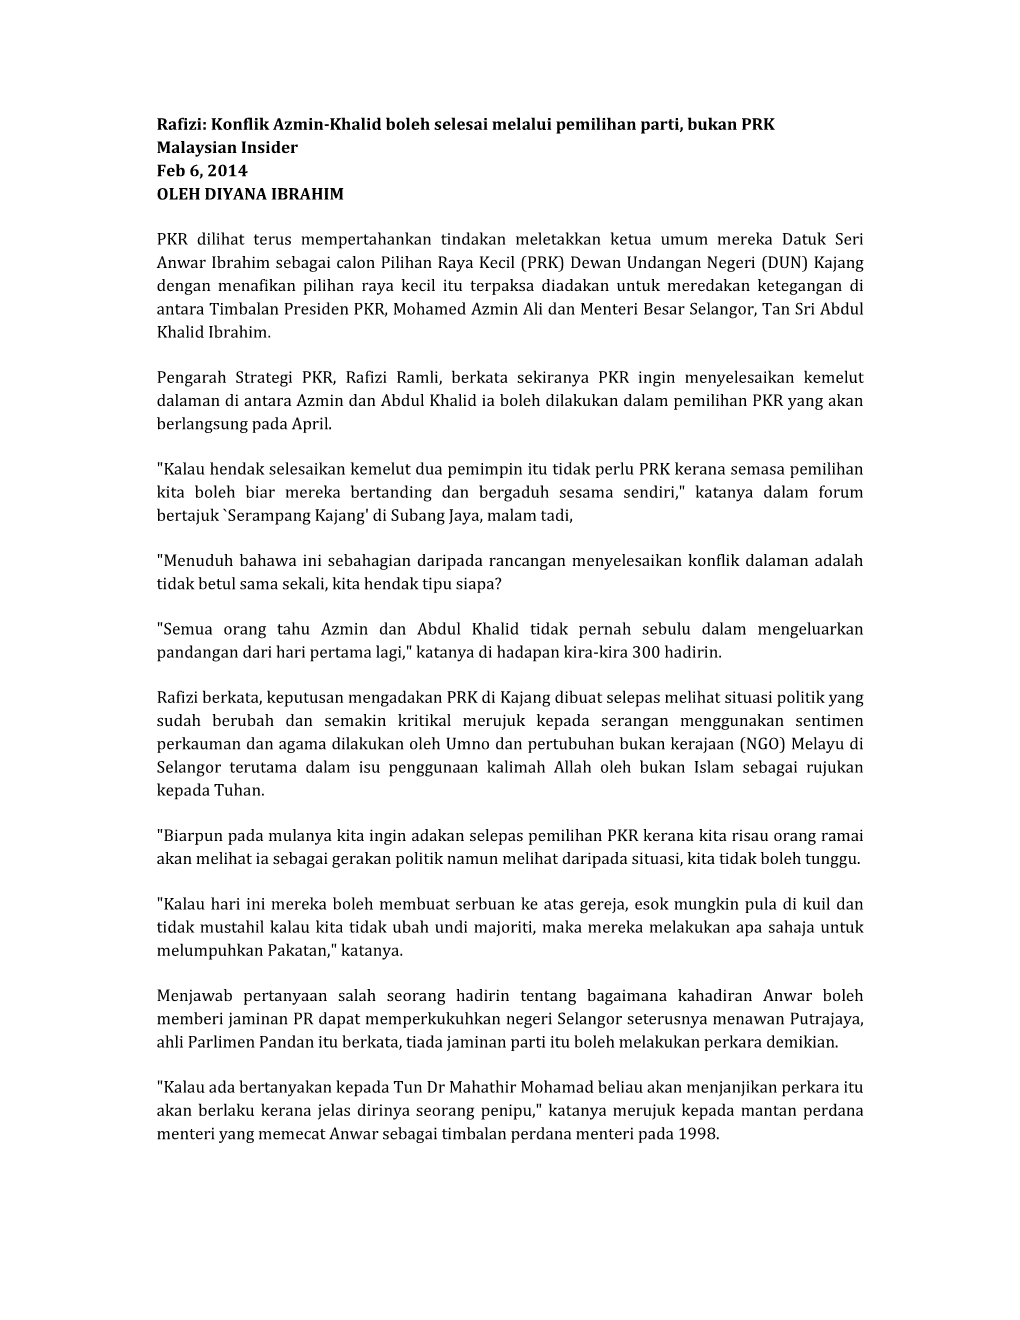 Rafizi: Konflik Azmin-Khalid Boleh Selesai Melalui Pemilihan Parti, Bukan PRK Malaysian Insider Feb 6, 2014 OLEH DIYANA IBRAHIM